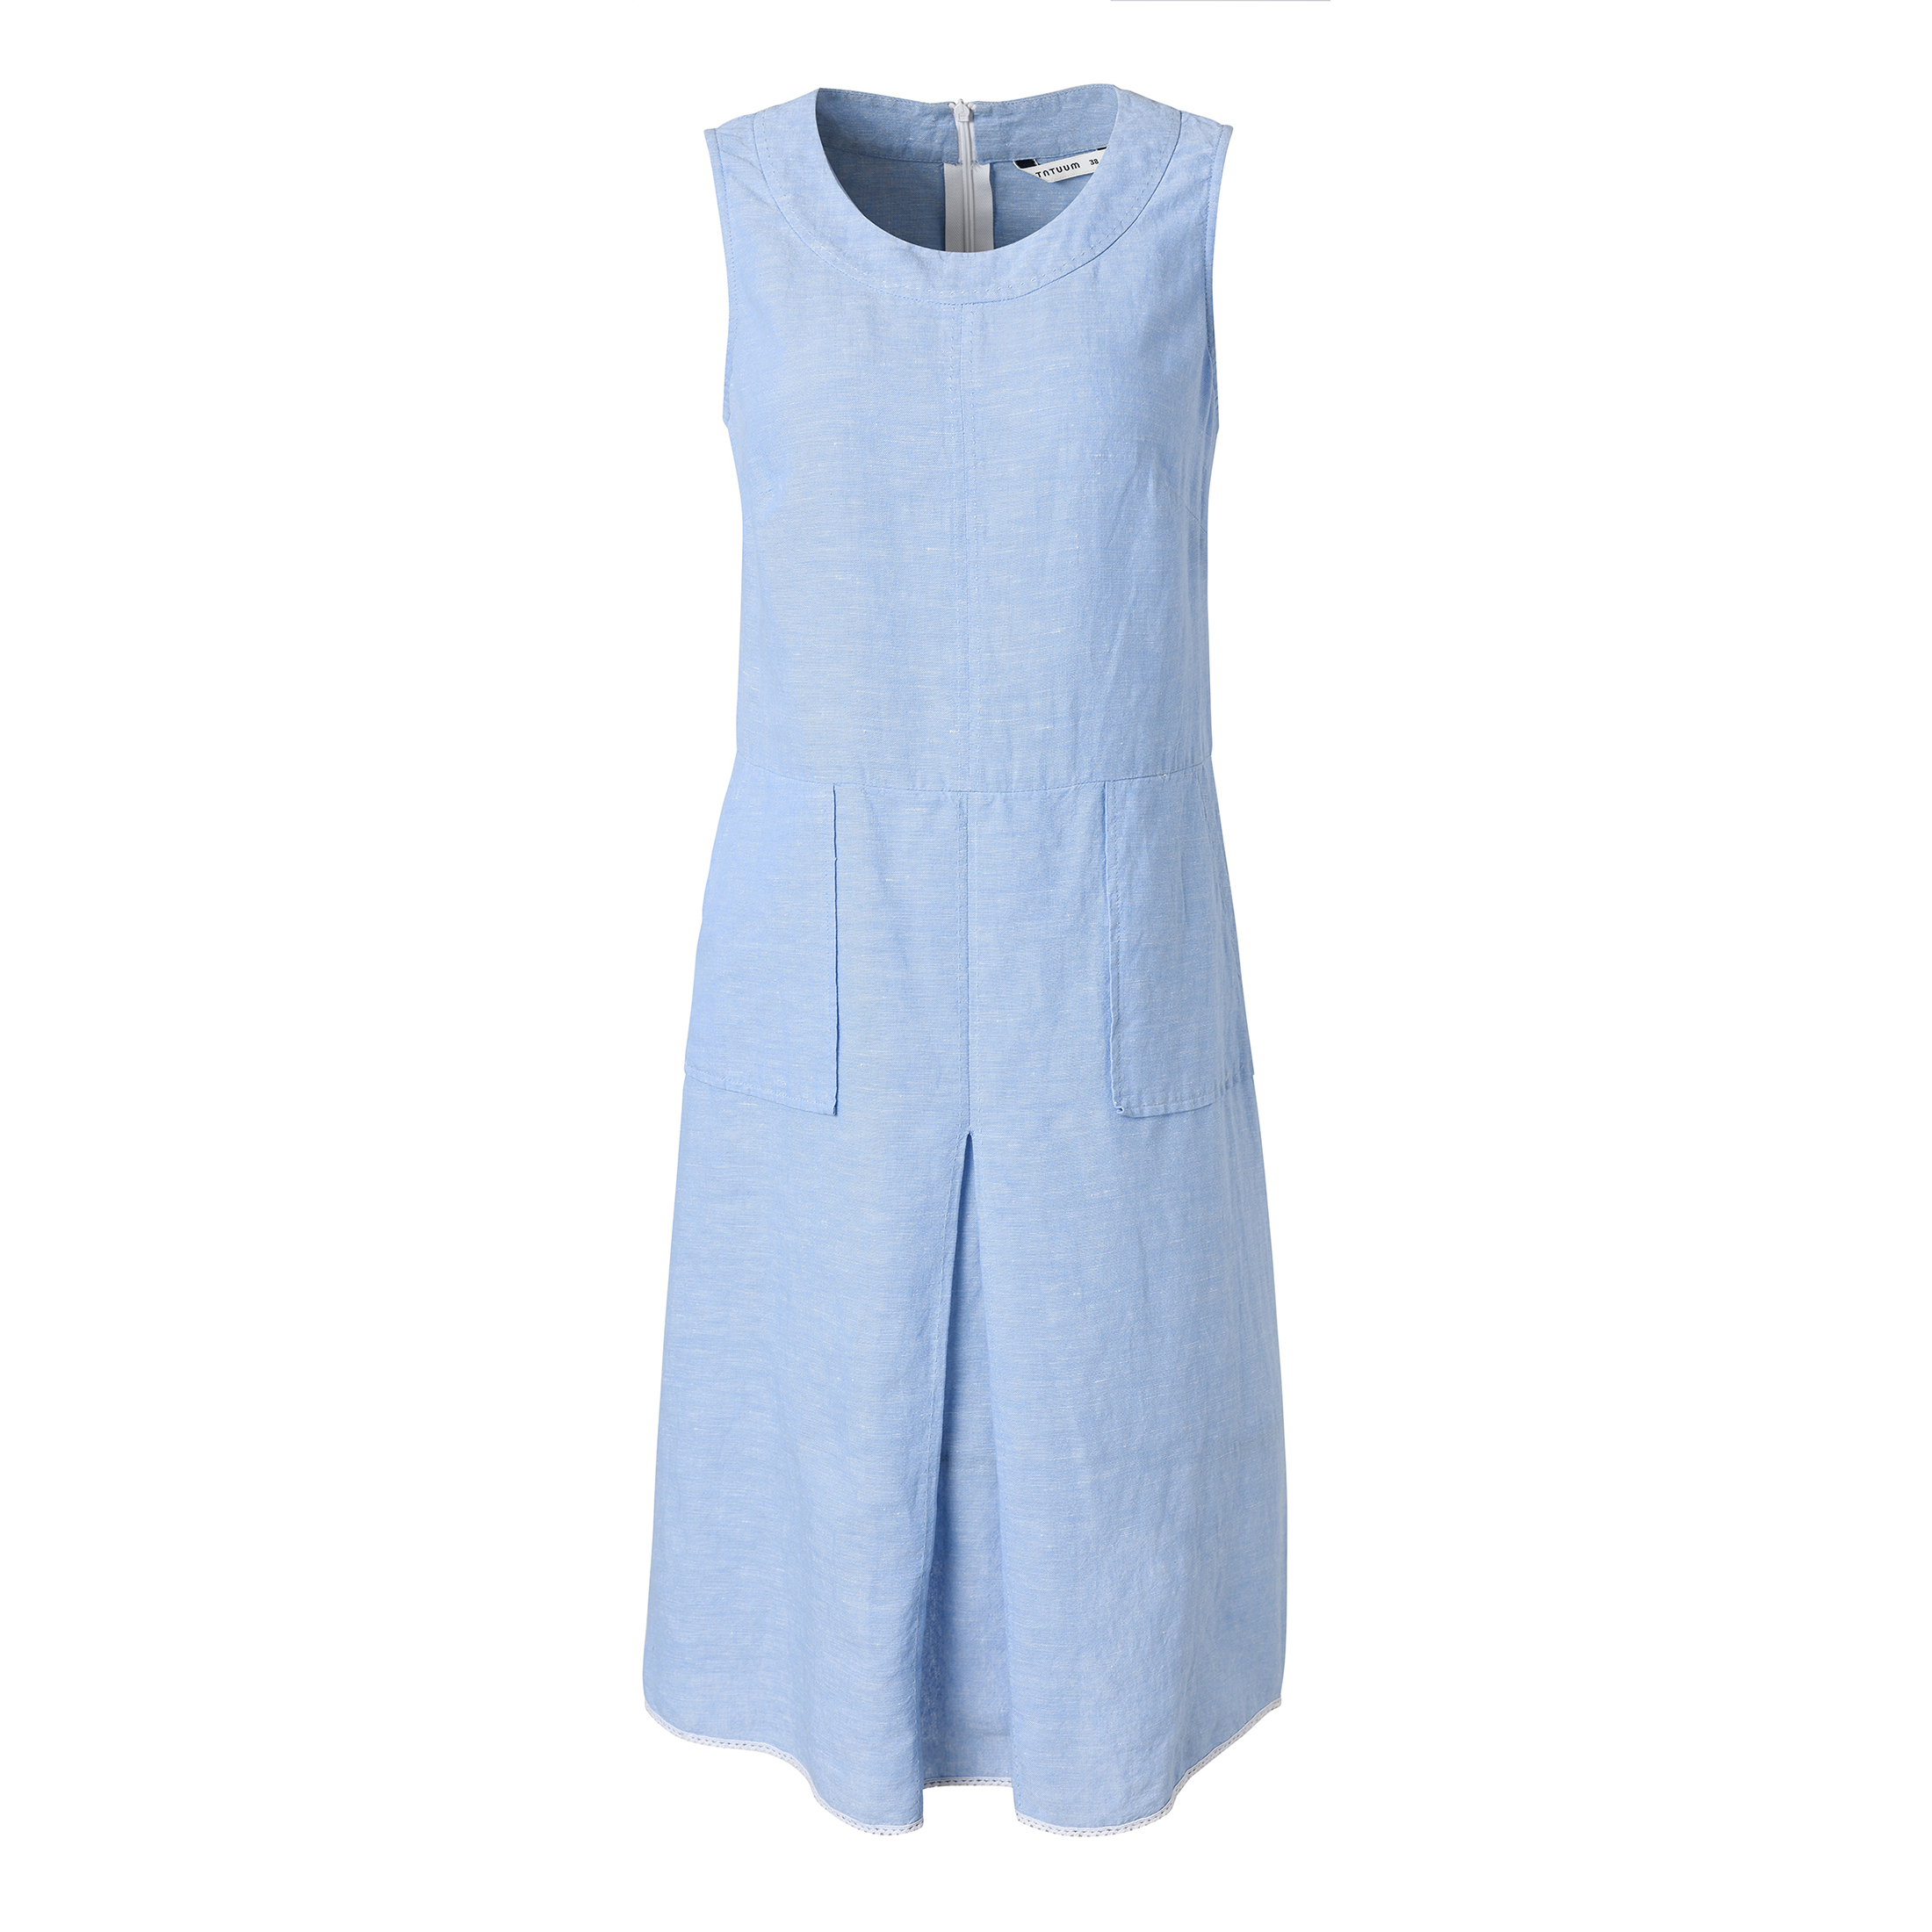 Woman's Dress - New Women's Long Linen Dress - Summer Dress